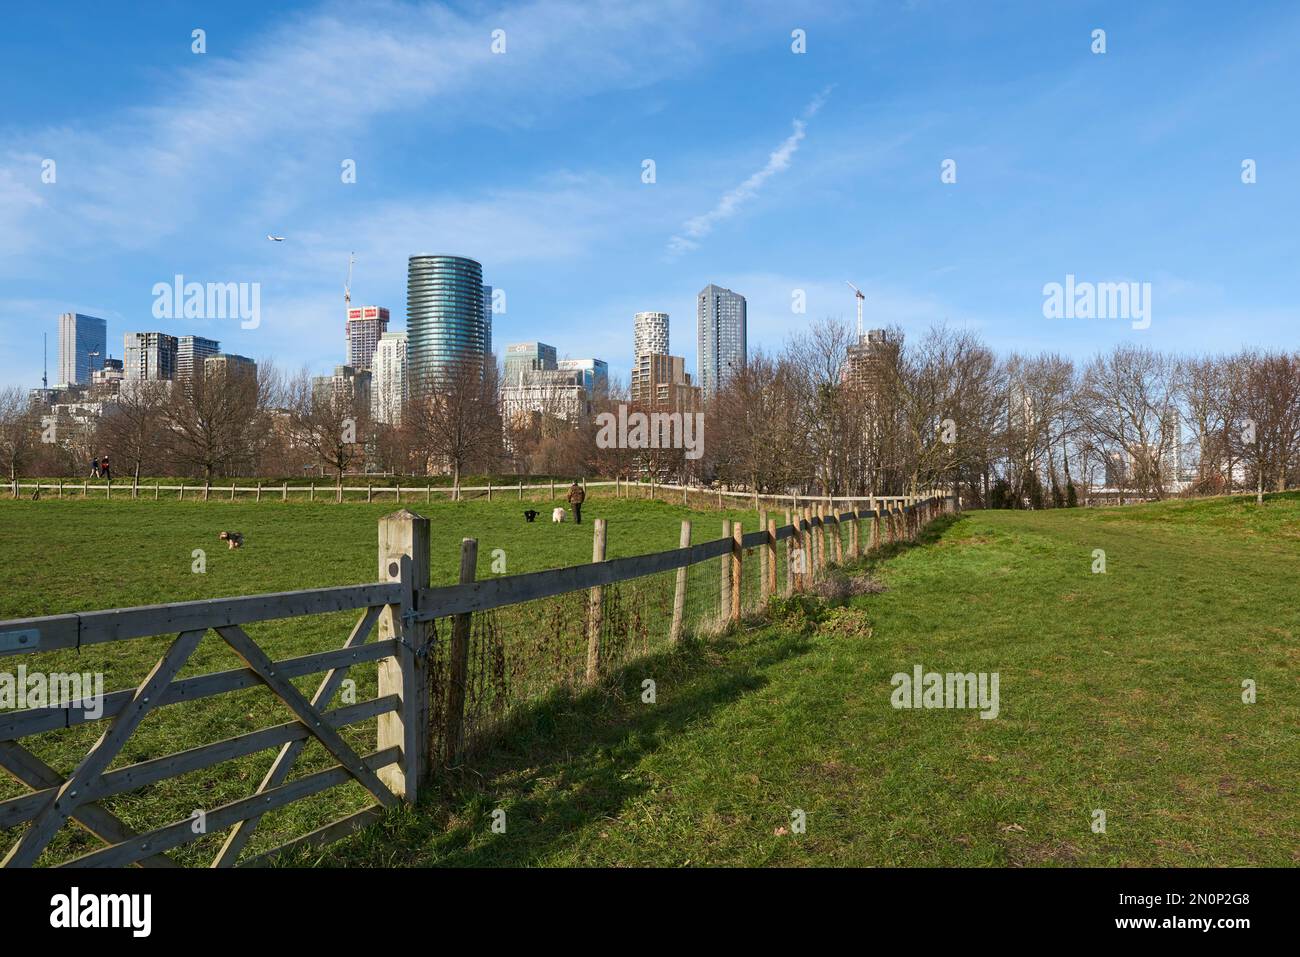 Felder mit Hundegängern im Mudshute Park, London Docklands UK, mit Gebäuden von Canary Wharf im Hintergrund Stockfoto